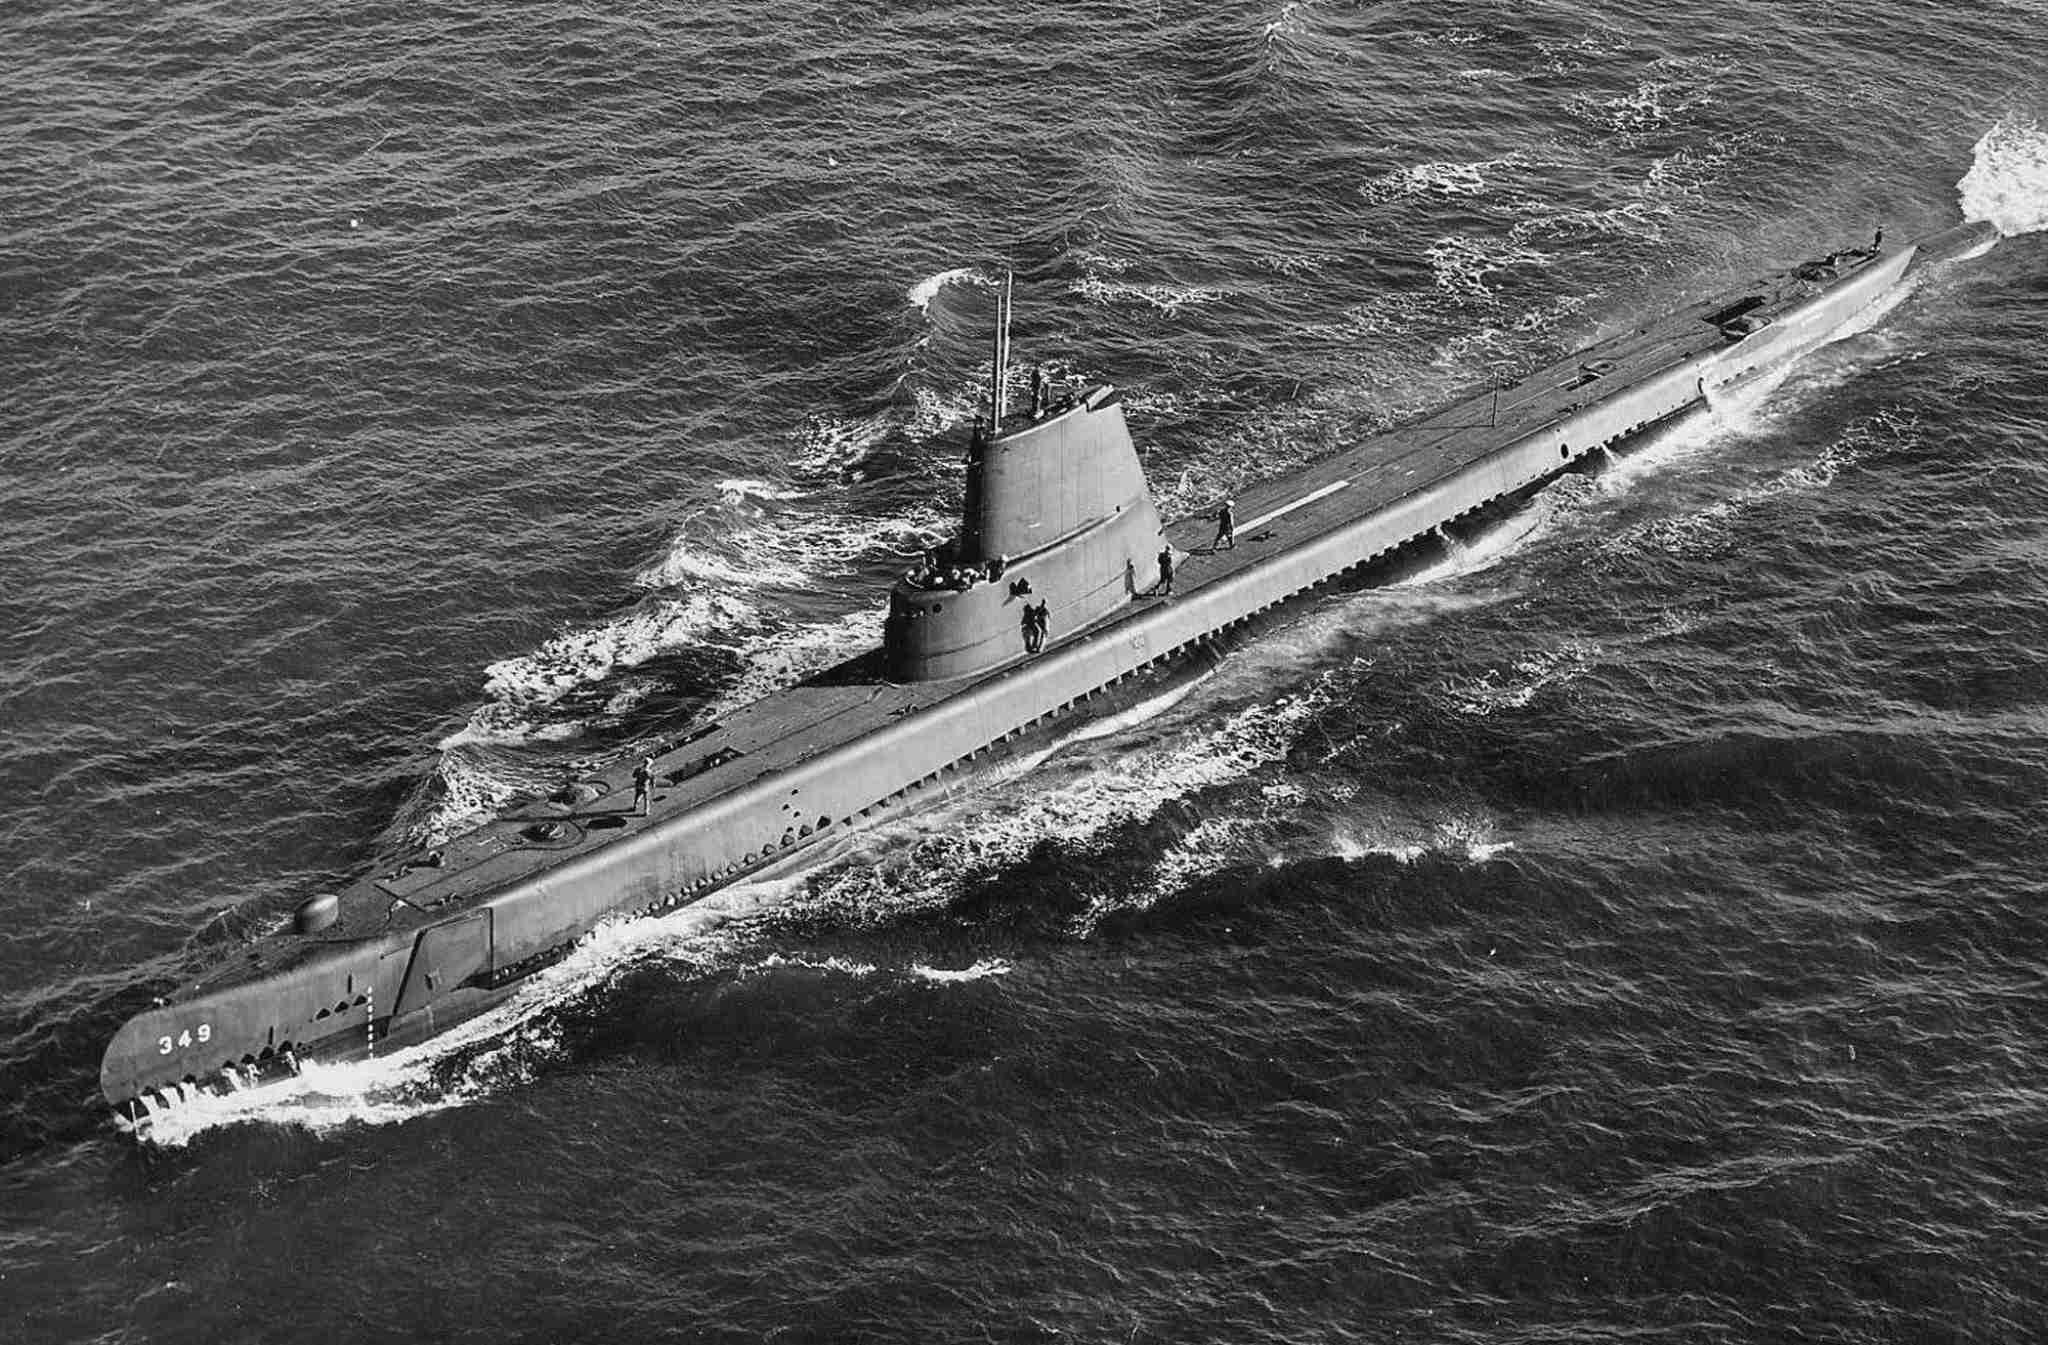 USS Triton: USS Triton là chiếc tàu ngầm được trang bị tối tân nhất vào thời điểm đó và đáng để được điểm mặt trong danh sách những \